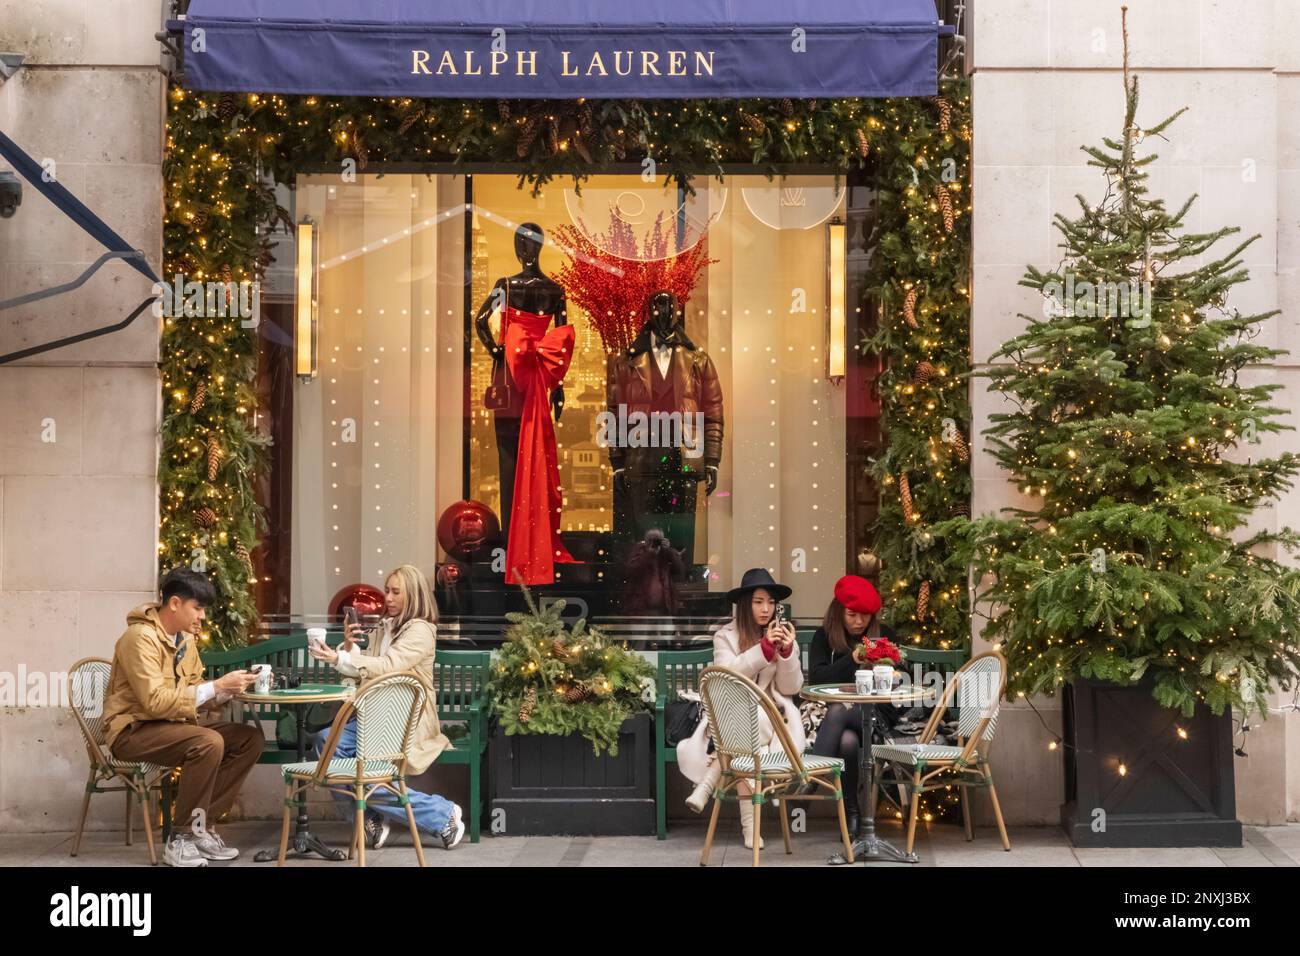 Angleterre, Londres, Piccadilly, New Bond Street, vue extérieure du magasin Ralph Lauren avec décorations de Noël Banque D'Images